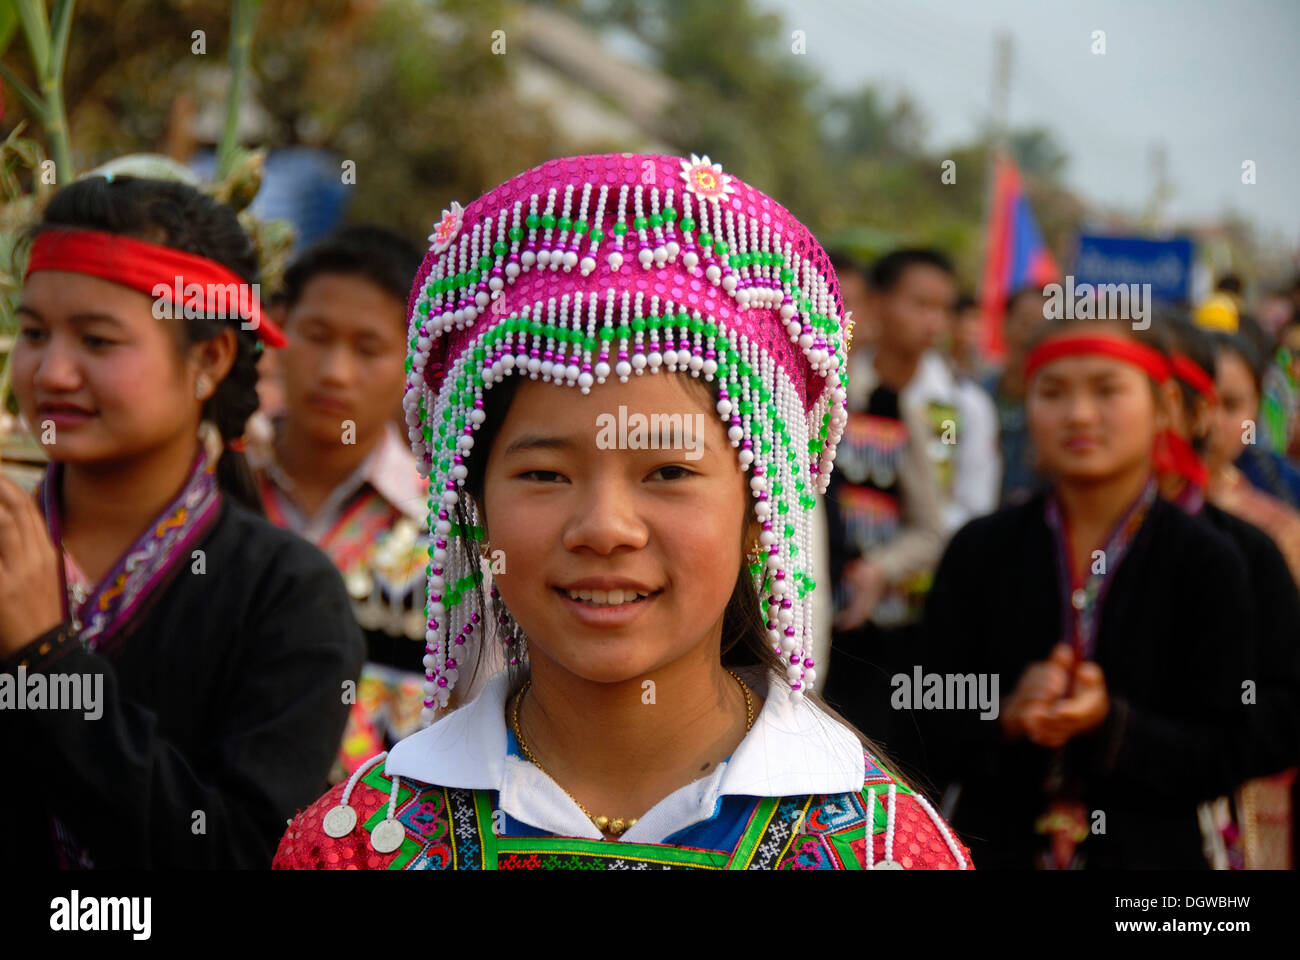 Portrait of a smiling girl du groupe ethnique hmong en costume traditionnel et coloré, Elephant Parade Festival coiffure Banque D'Images